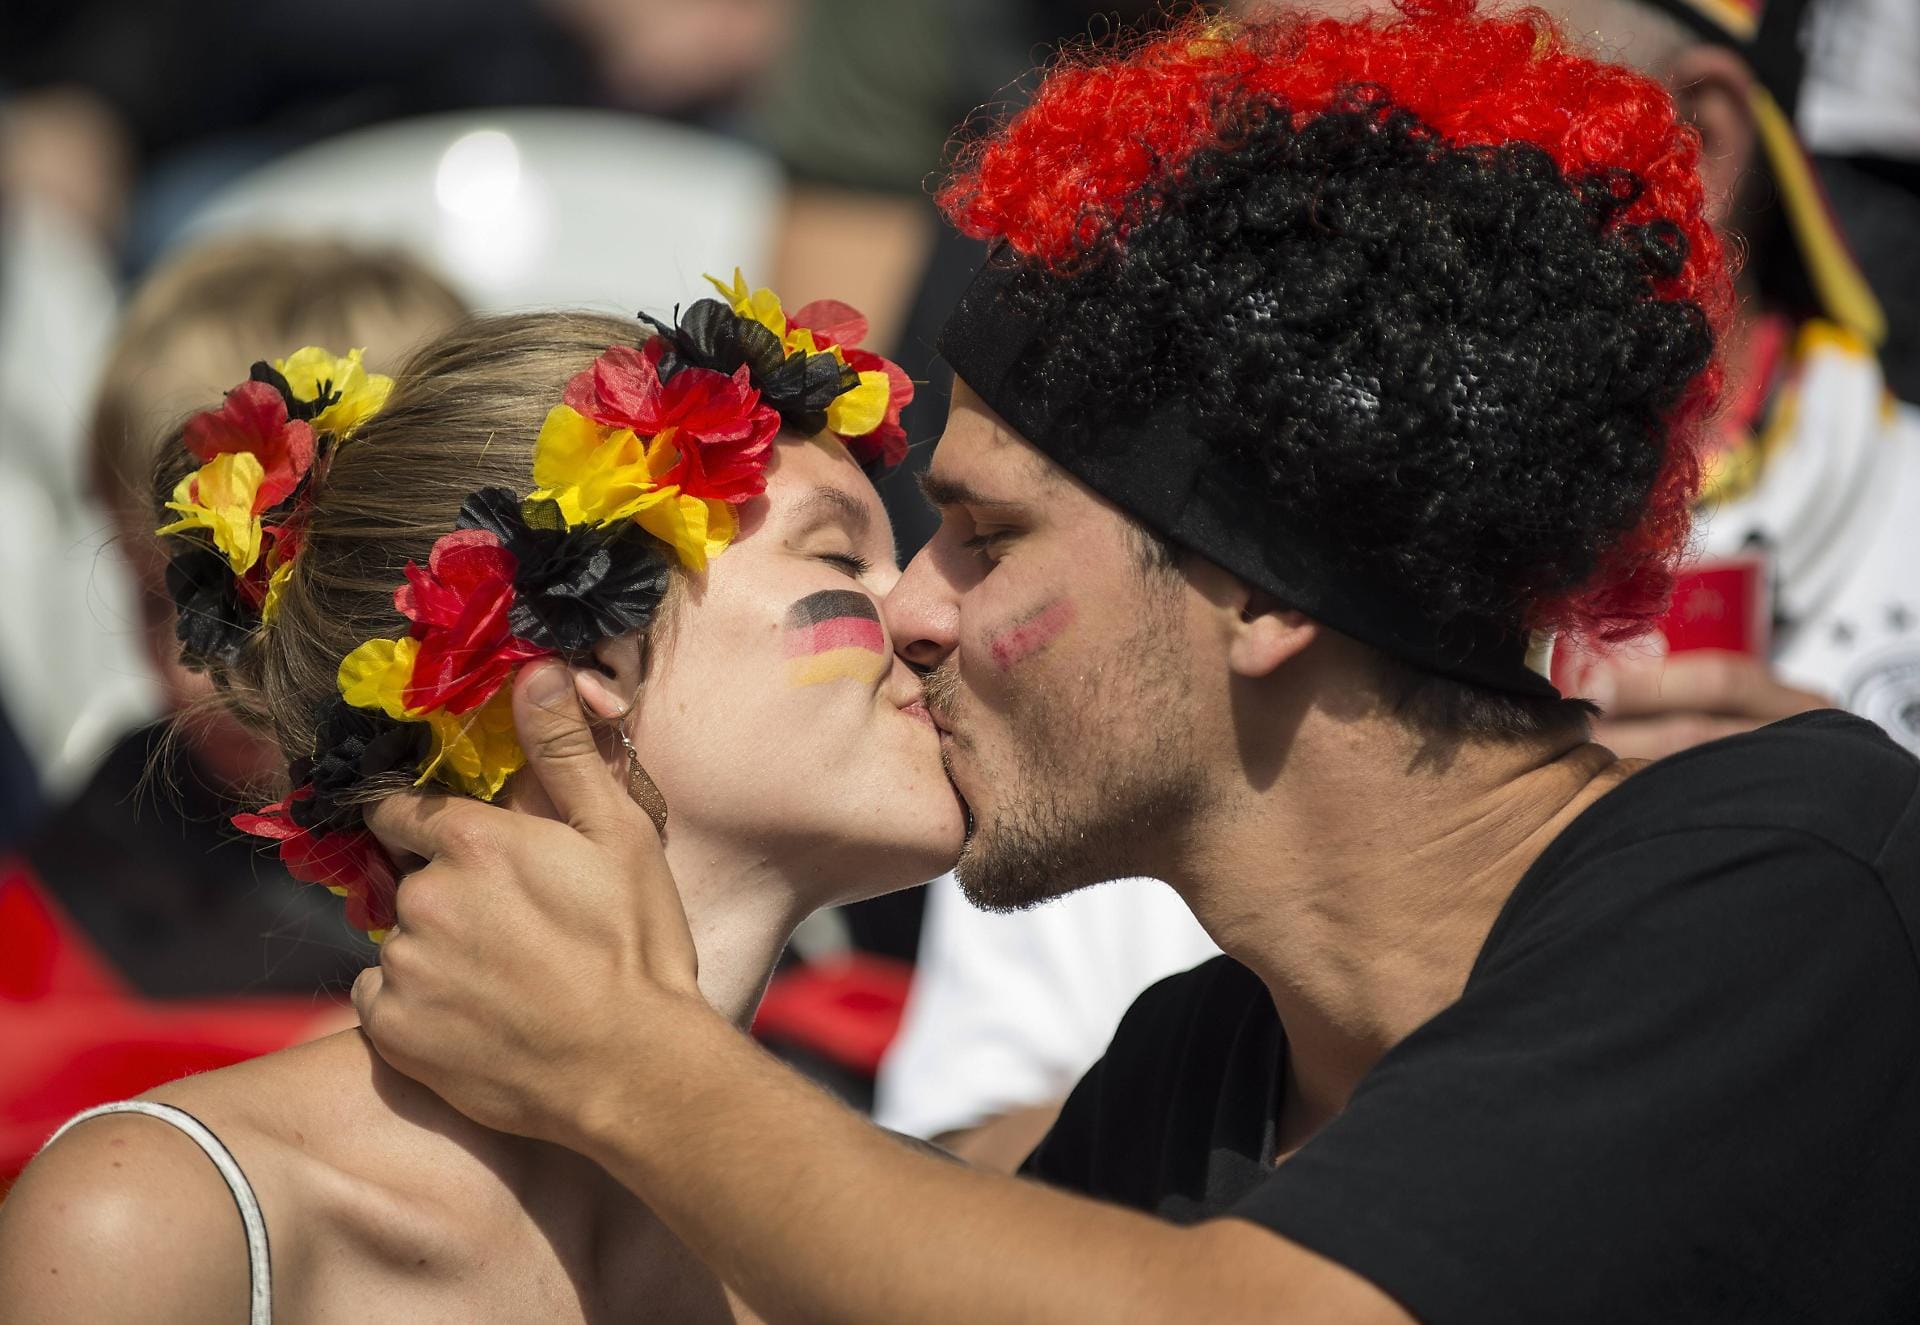 Leidenschaftliche deutschen Fans küssen sich beim Spiel gegen die Slowakei.